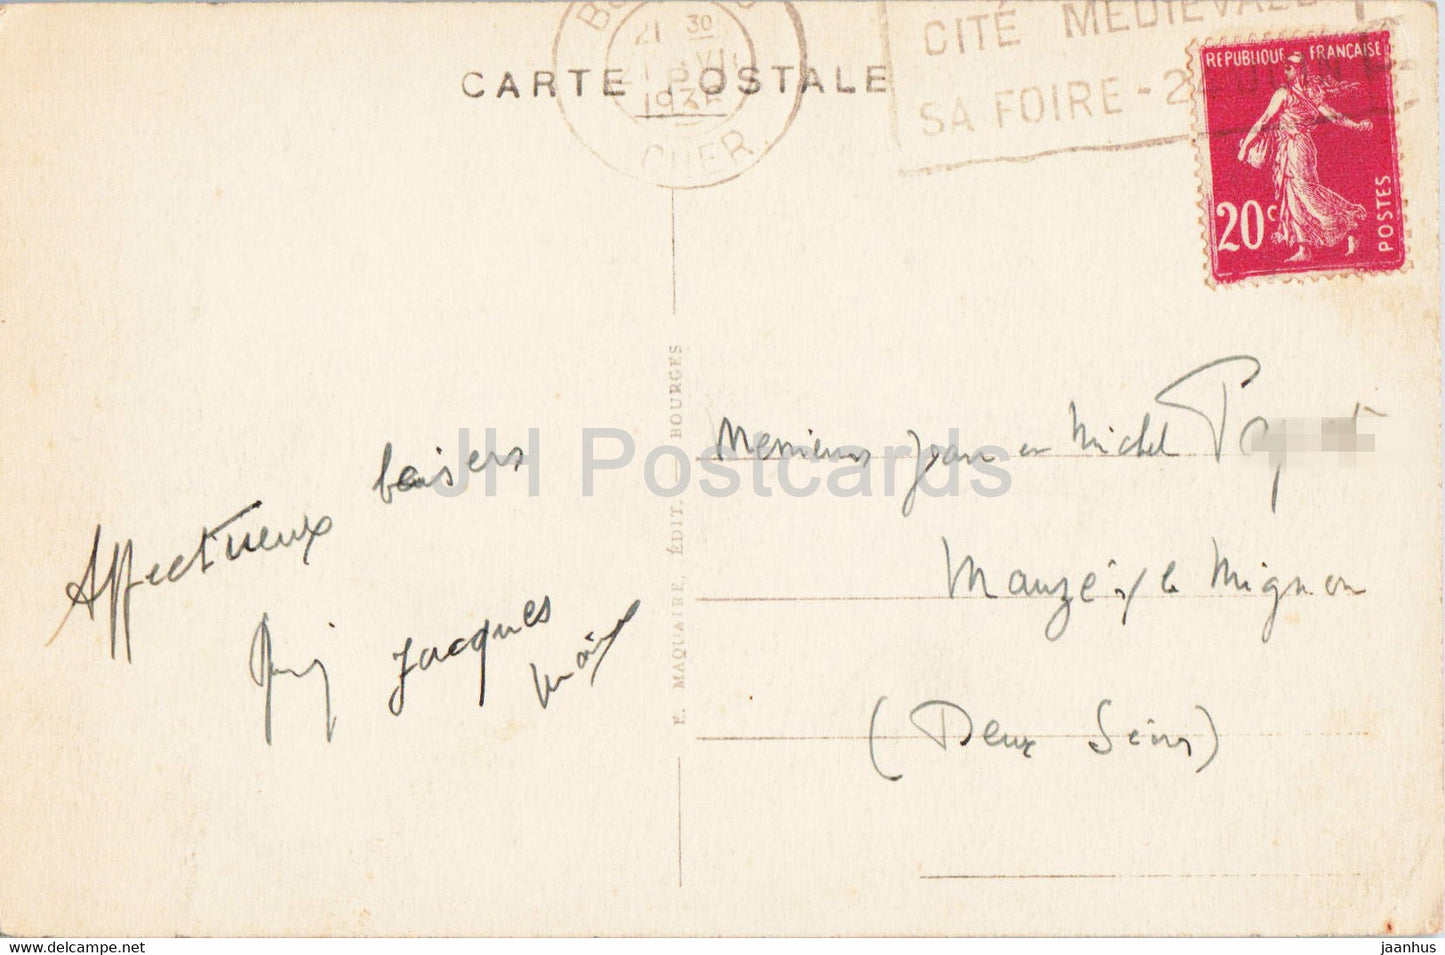 Bourges - Palais Jacques Coeur - La Facade - 301 - carte postale ancienne - 1936 - France - occasion